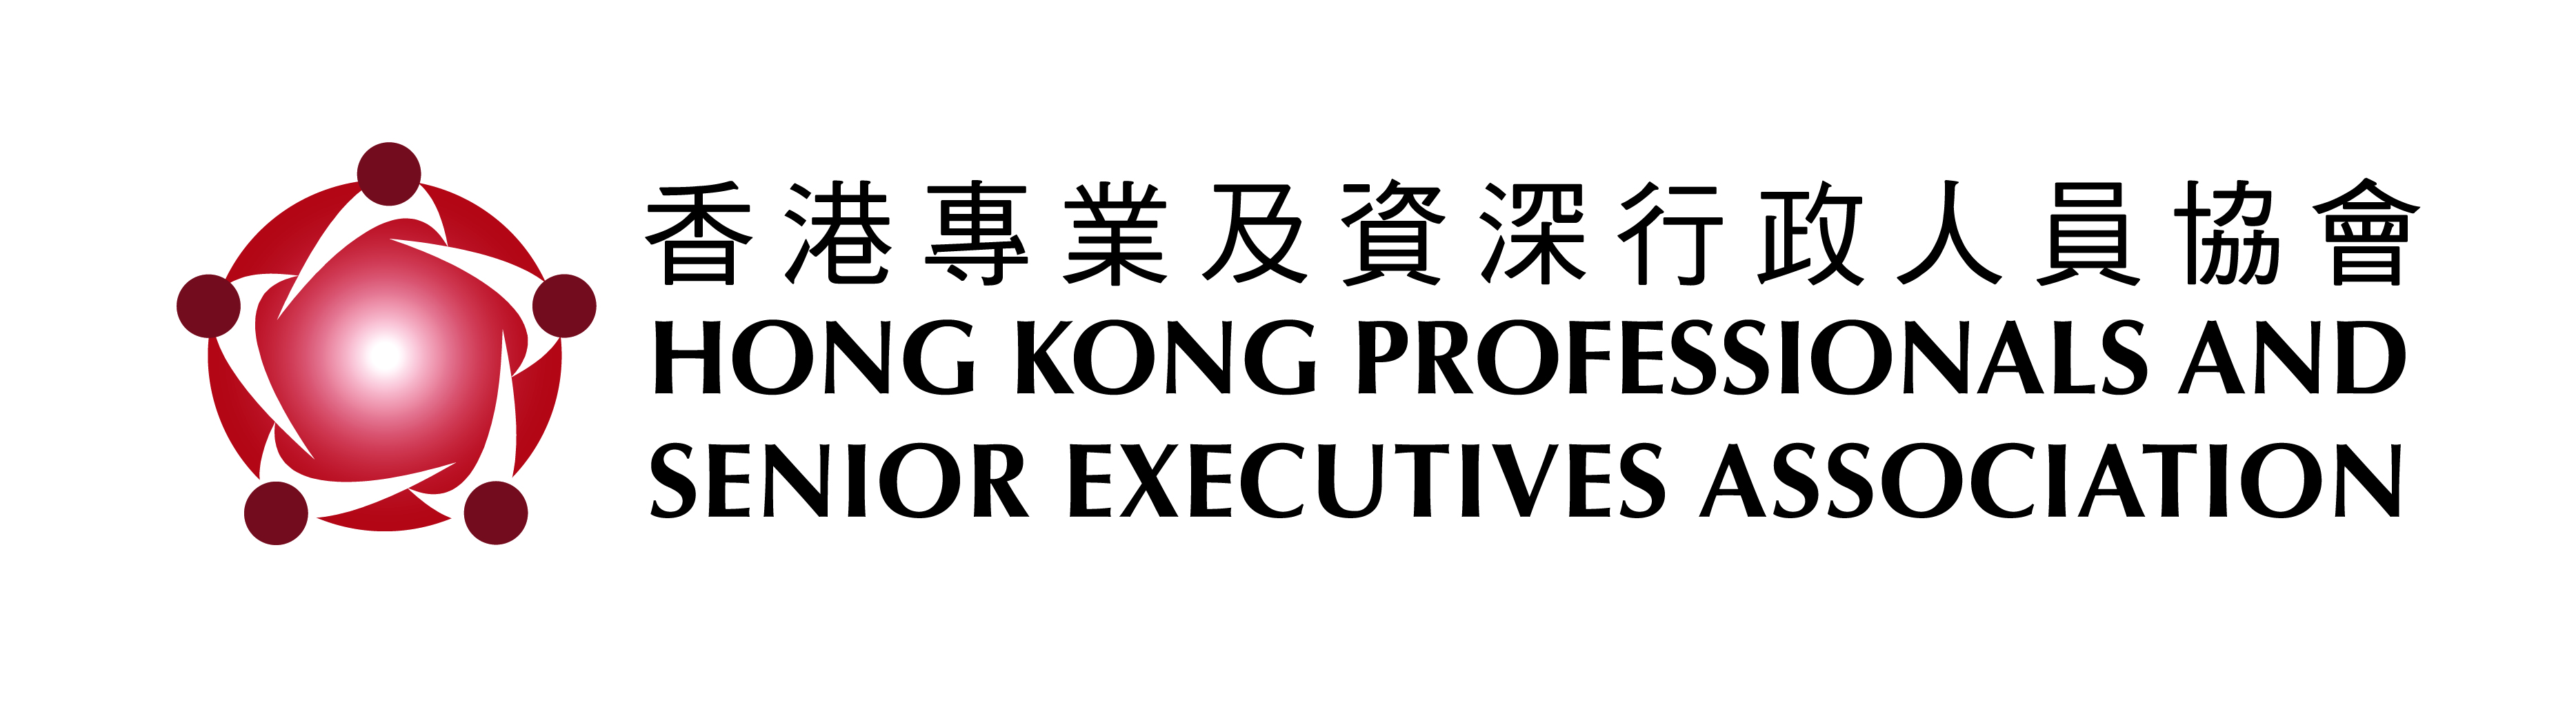 HKPASEA logo_ADV